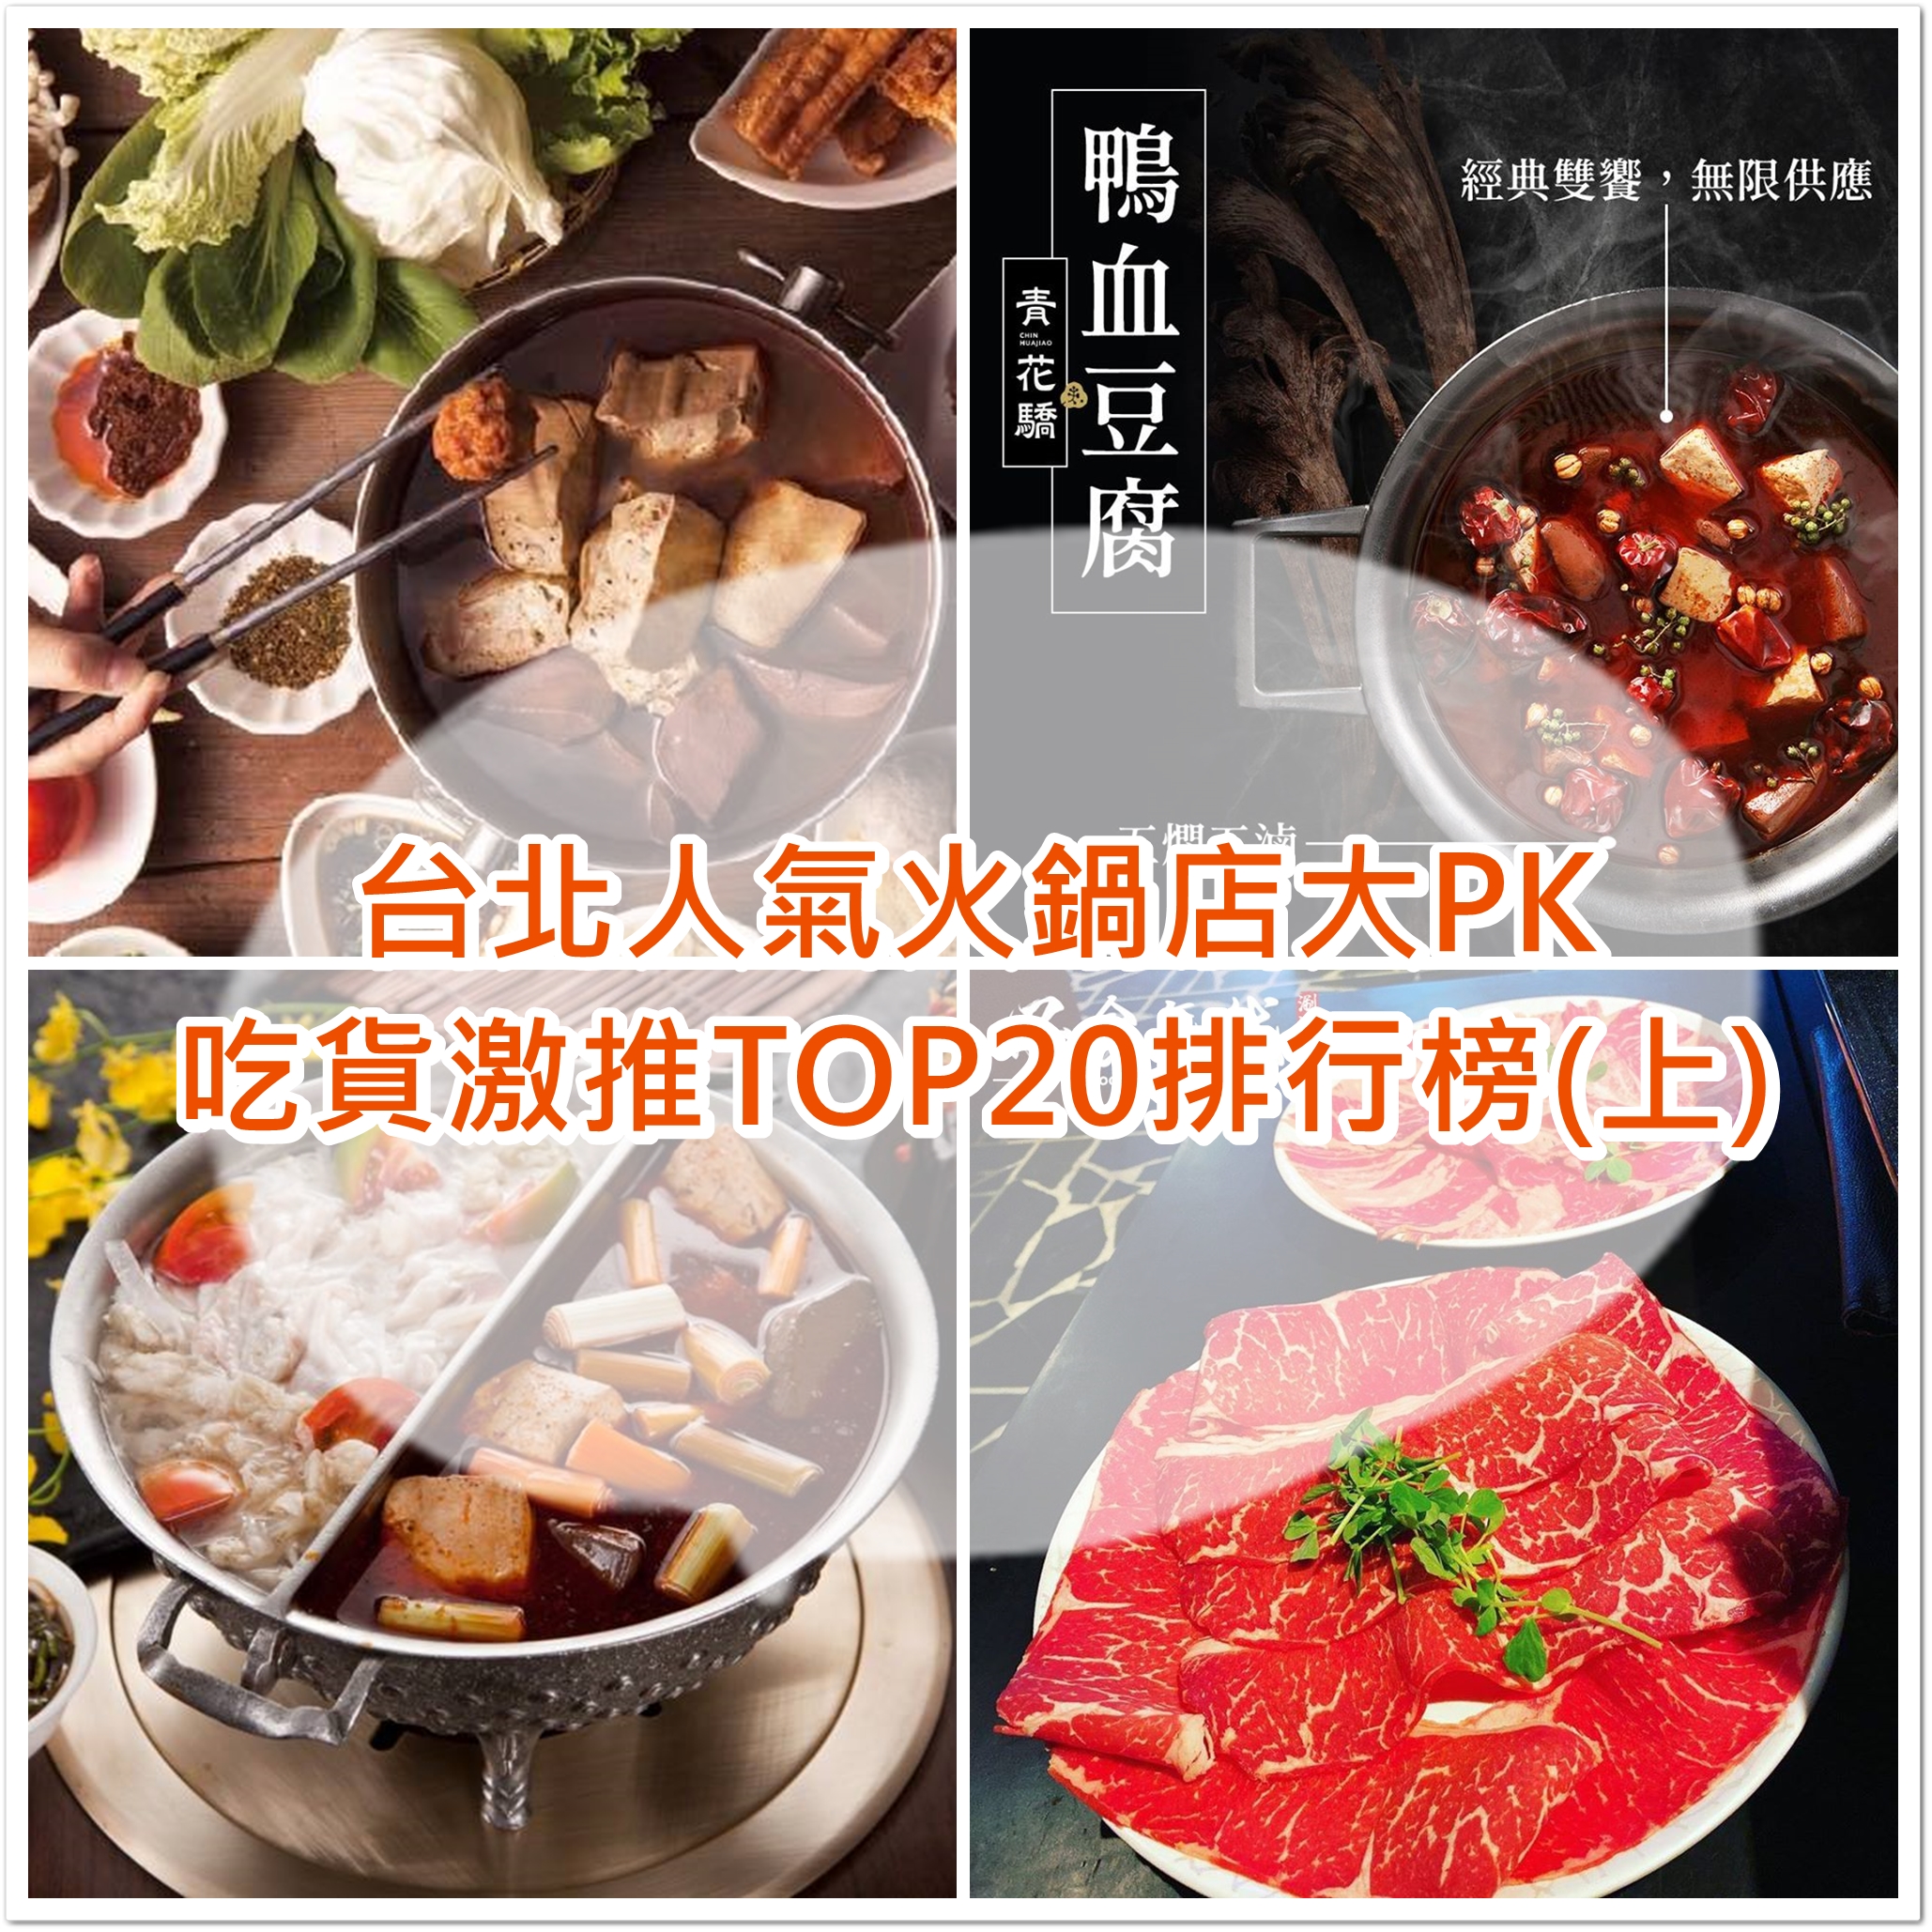 二訪台北京站-杜蘭朵餐廳TURANDOT @東南亞投資報告